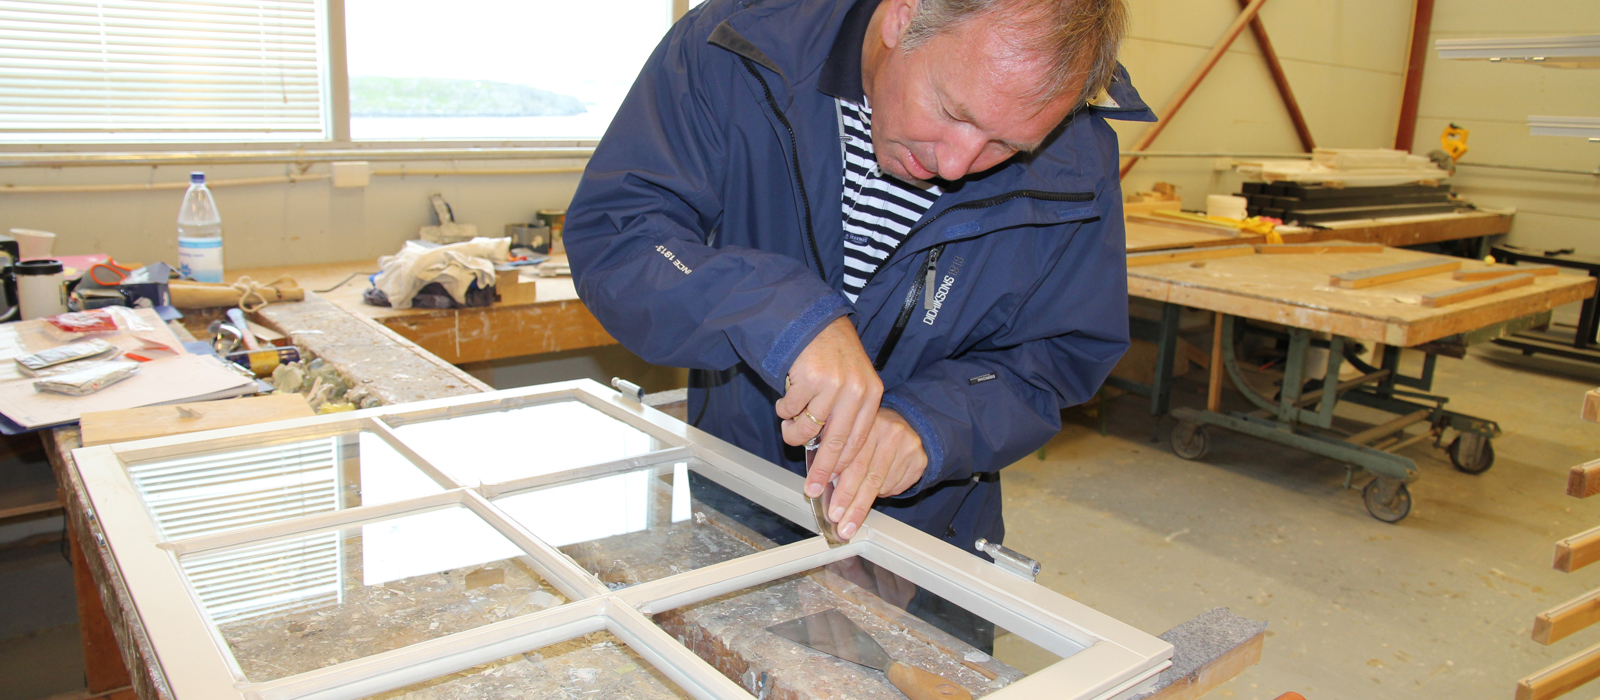 Ole Olsen ser om han husker gamle kunster. Kitting av vinduer gjøres med linoljekitt og vinduene er eksakte kopier. Foto: Christel Wigen Grøndahl, Bygg og Bevar 